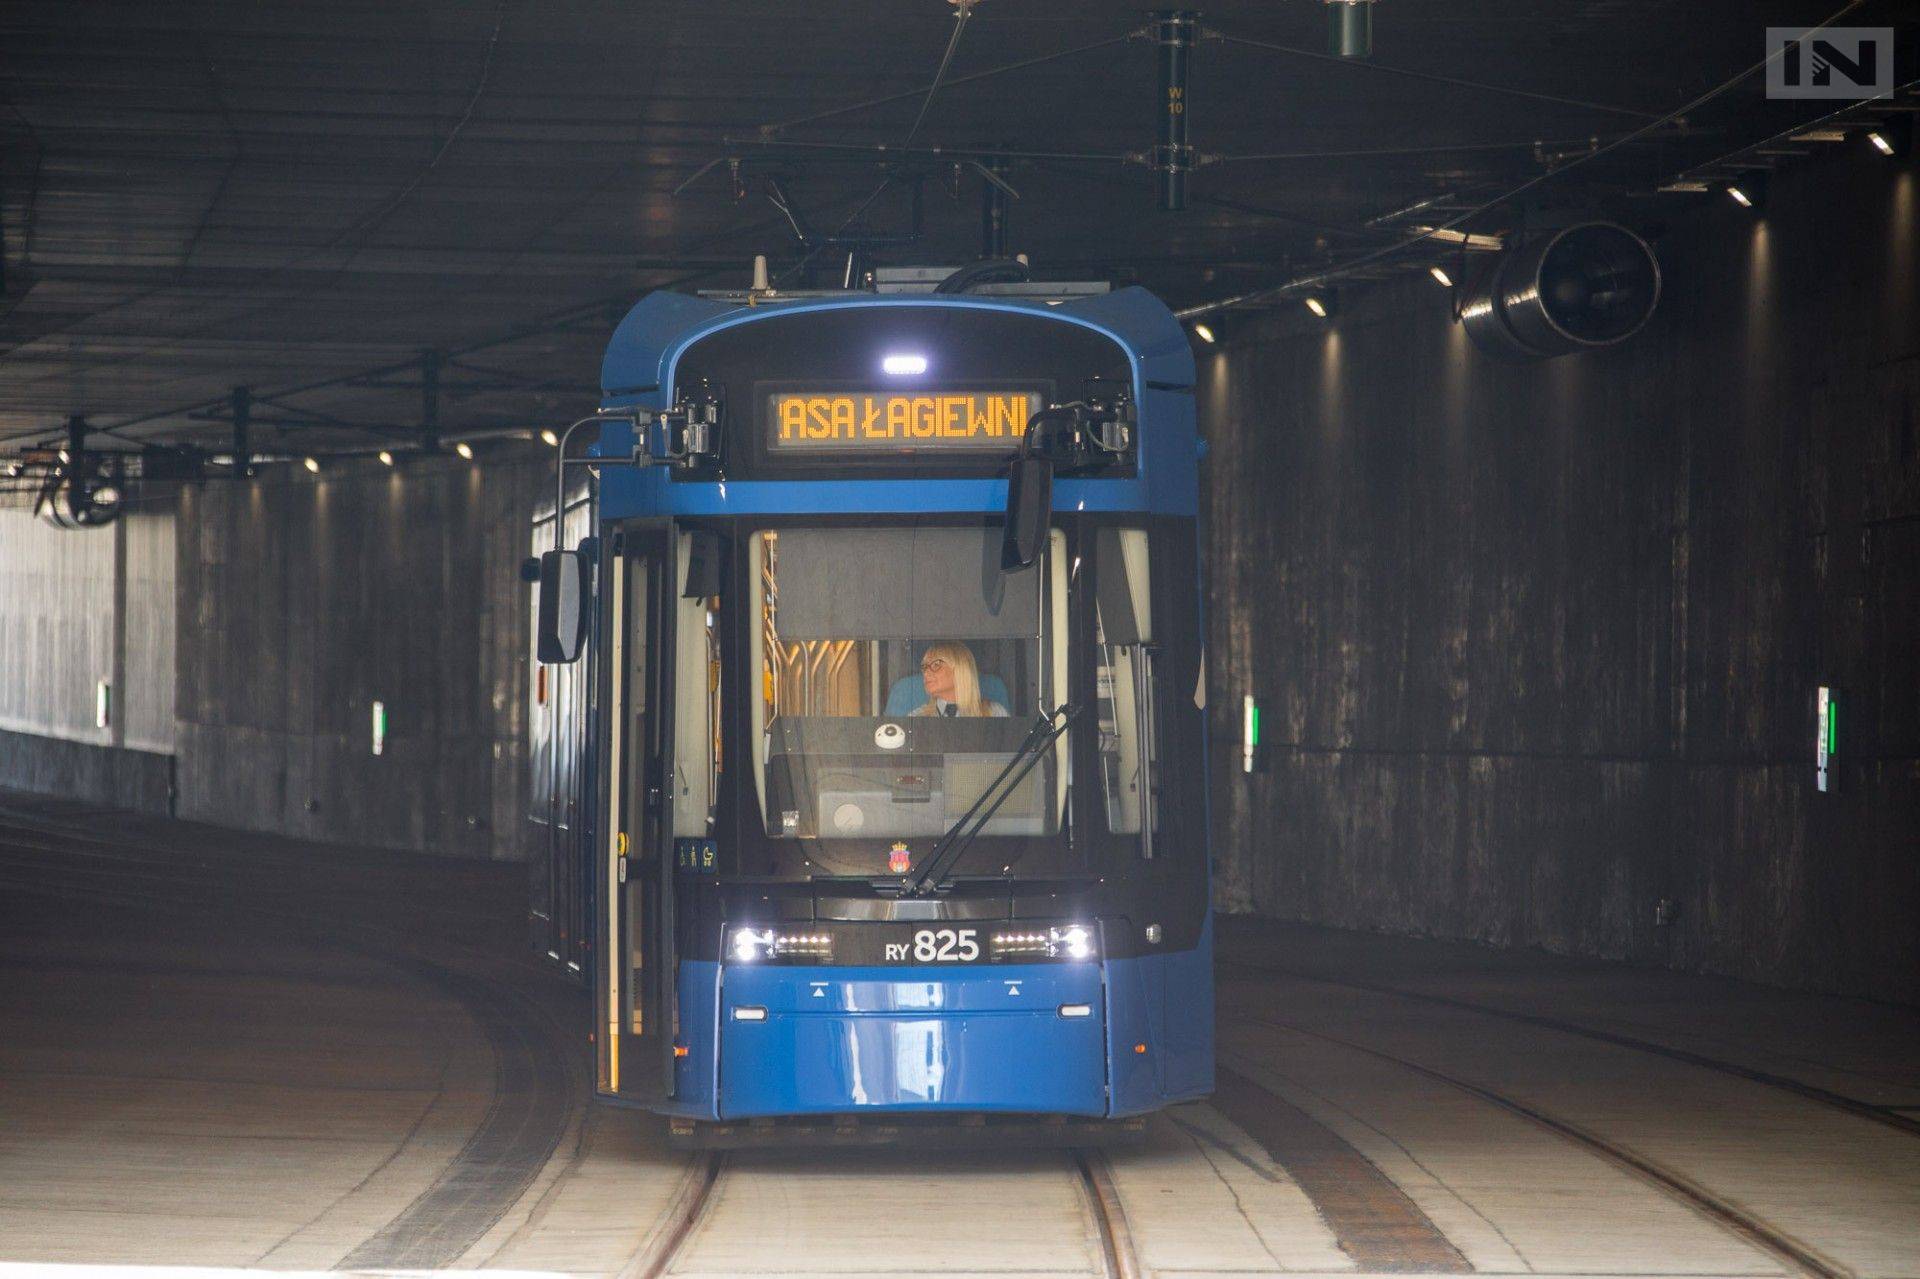 Tunele tramwajowe lepsze niż metro, bo... Kraków nie ma złóż ropy naftowej